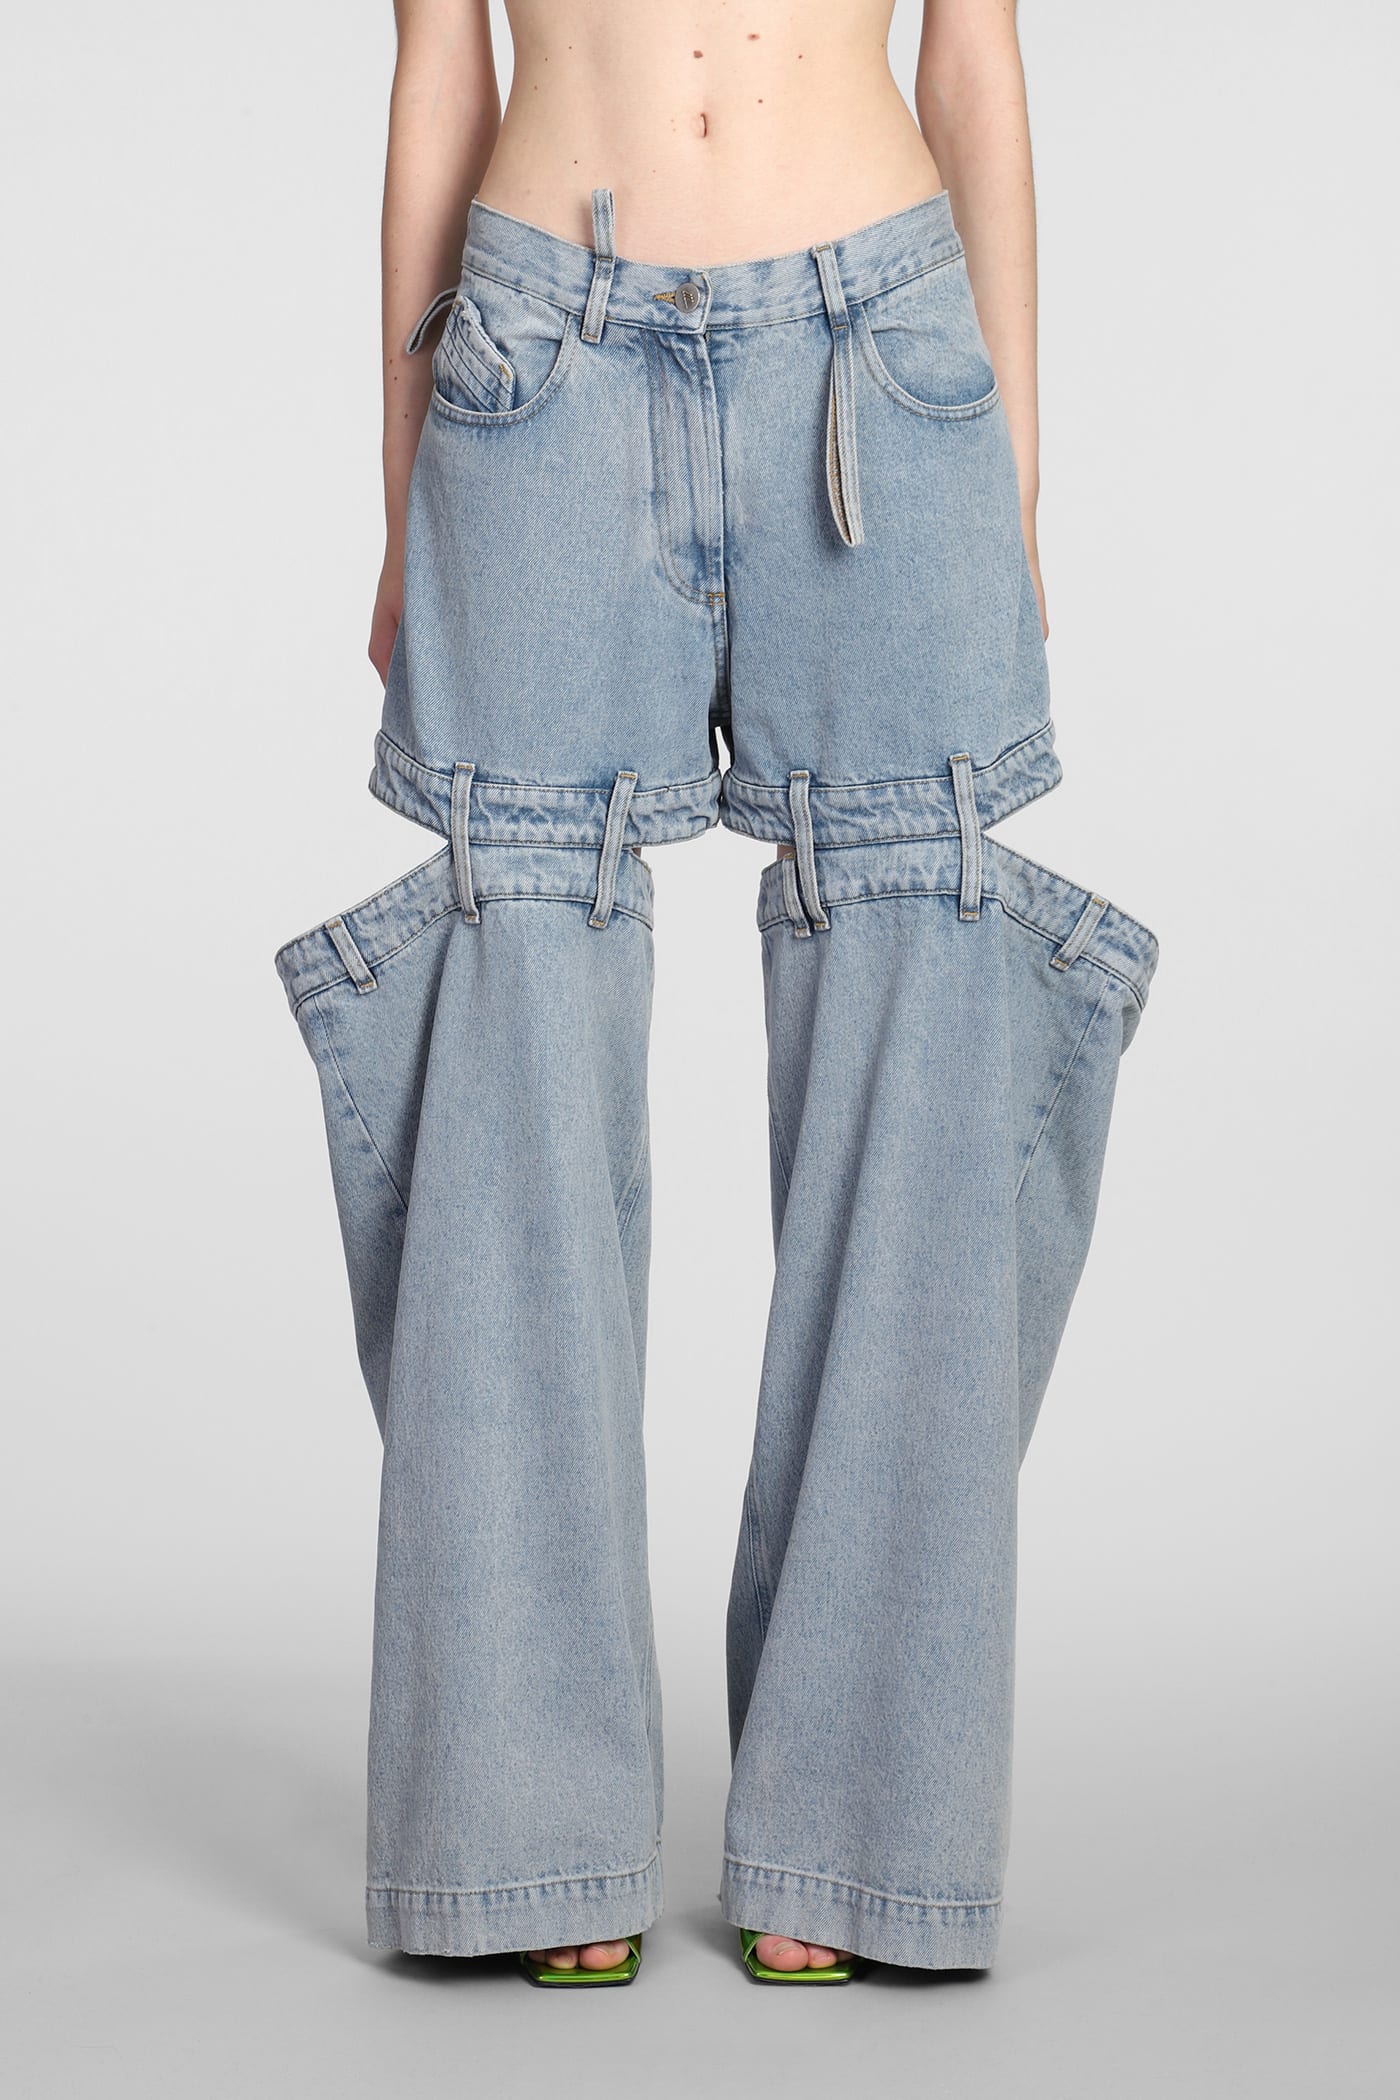 Attico Ashton Jeans In Cyan Cotton